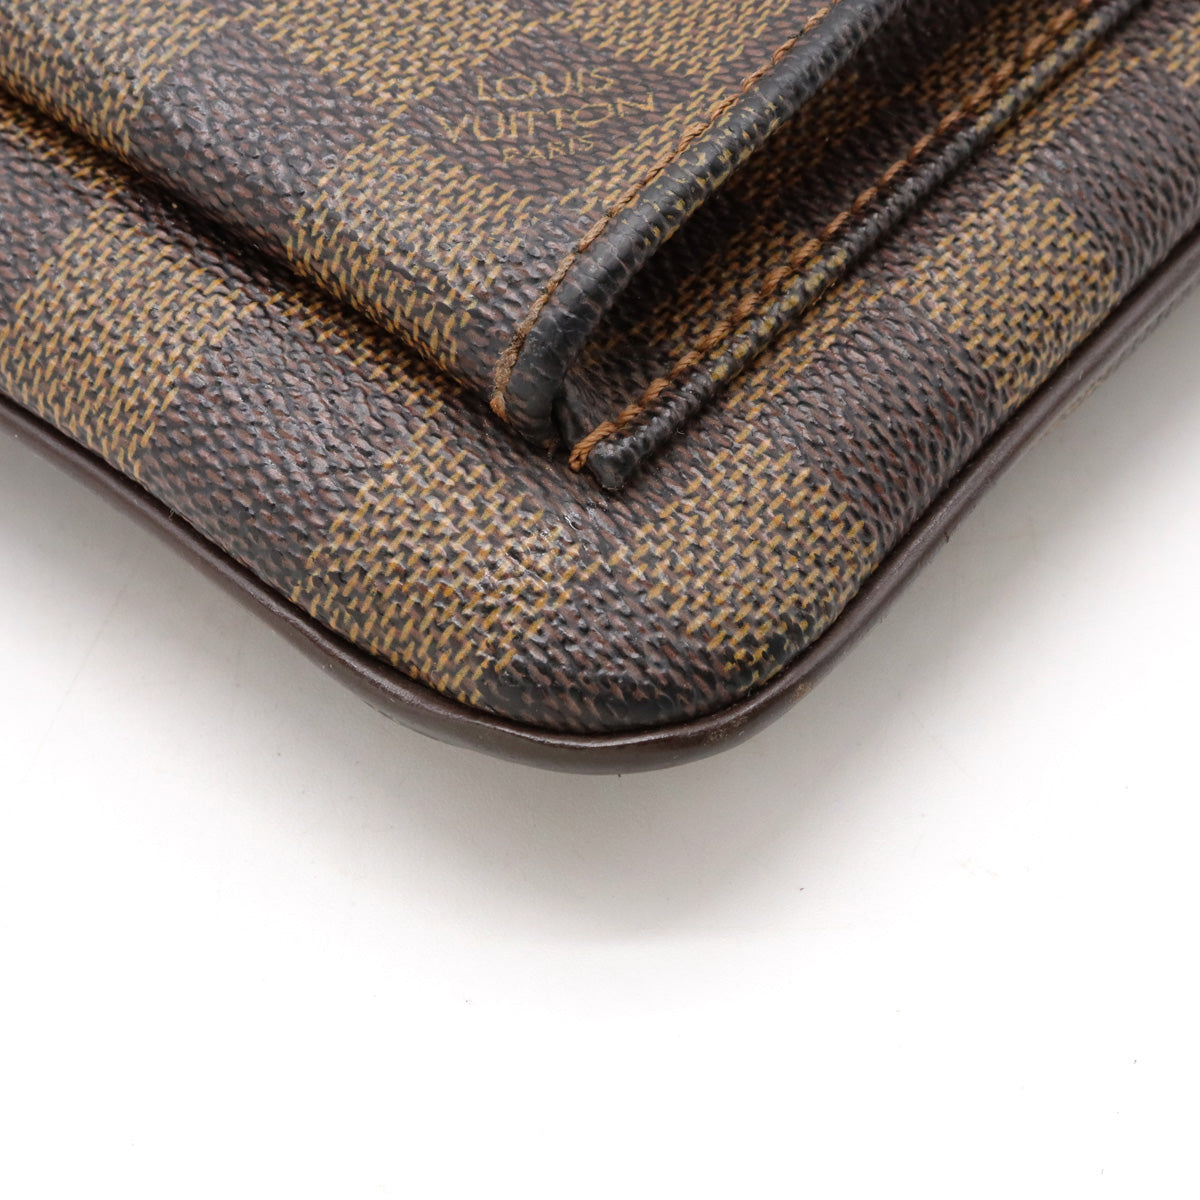 Louis Vuitton The Pochette Melville Damier Ebene Crossbody Bag on SALE